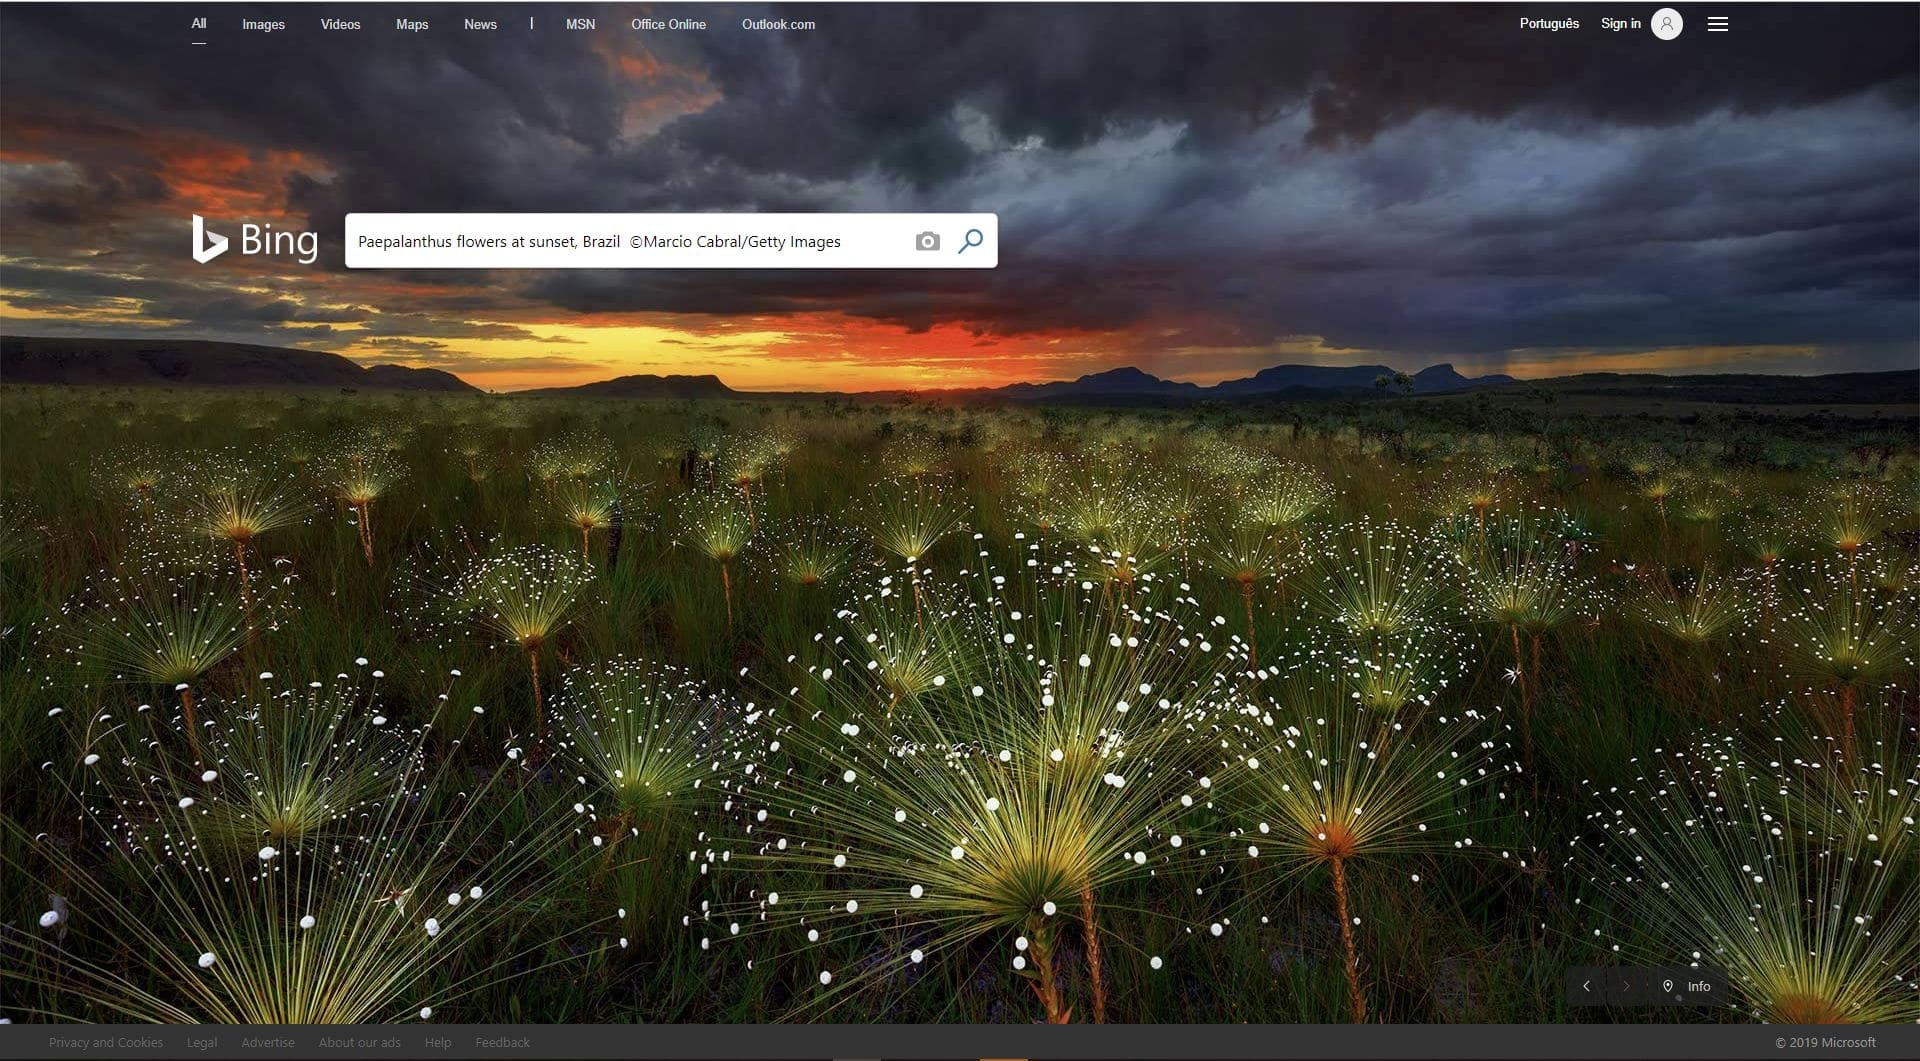 Trierenberg - Paepalanthus é uma das imagens de capa publicadas pelo Bing